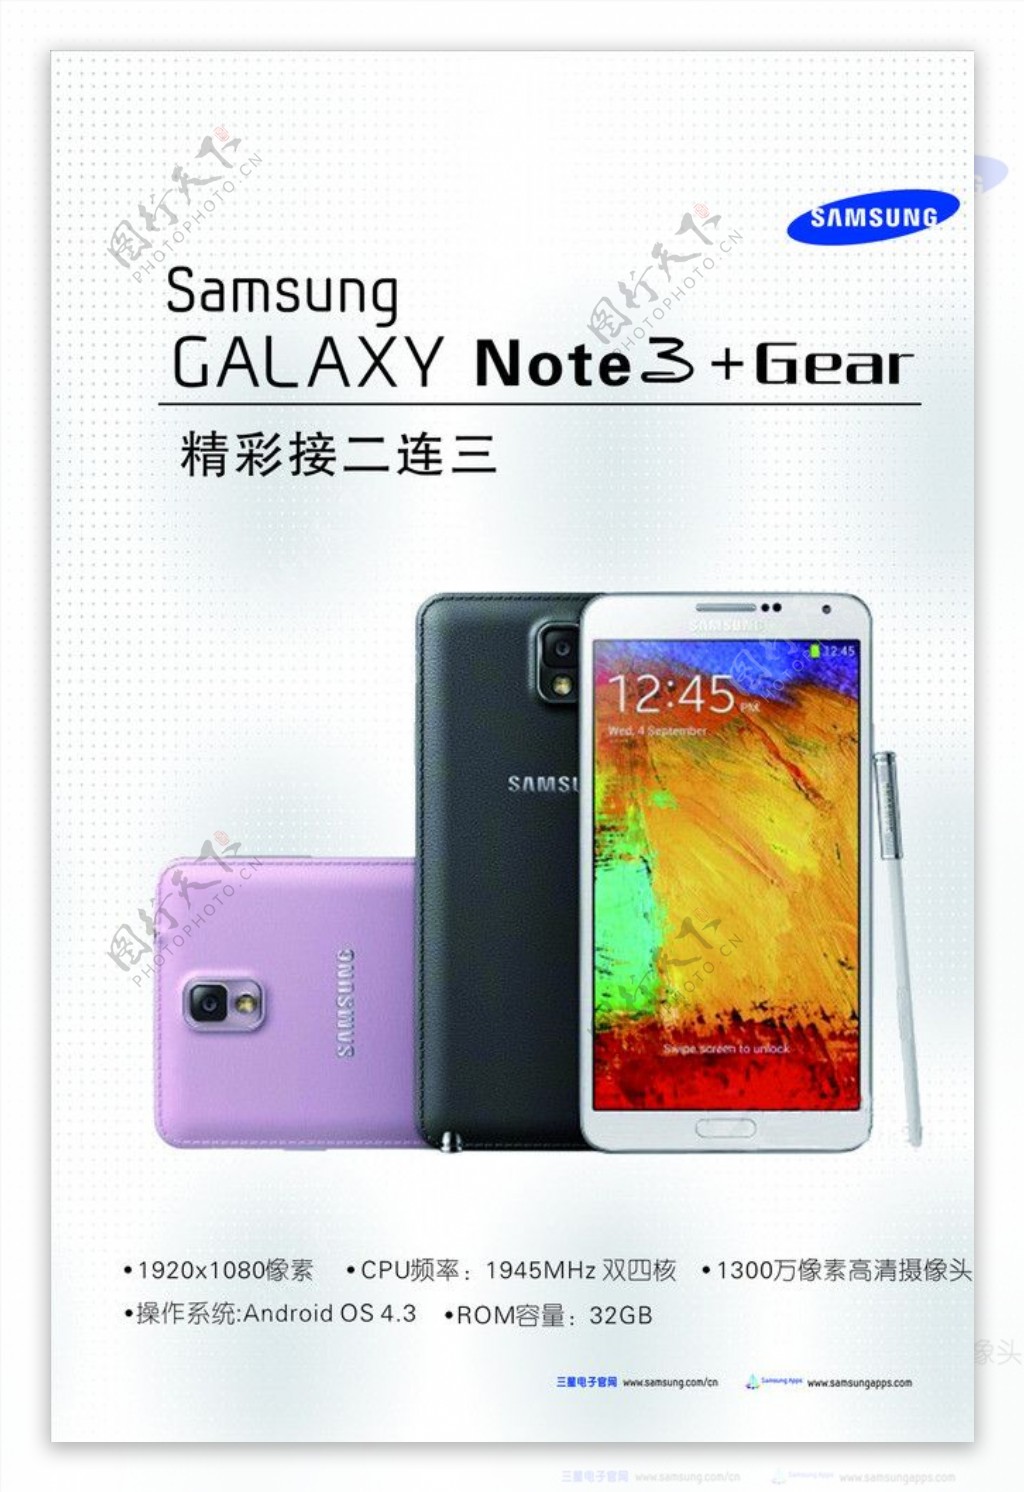 Samsung Galaxy Note 3 Neo International 16GB SM-N7505-BLACK B&H